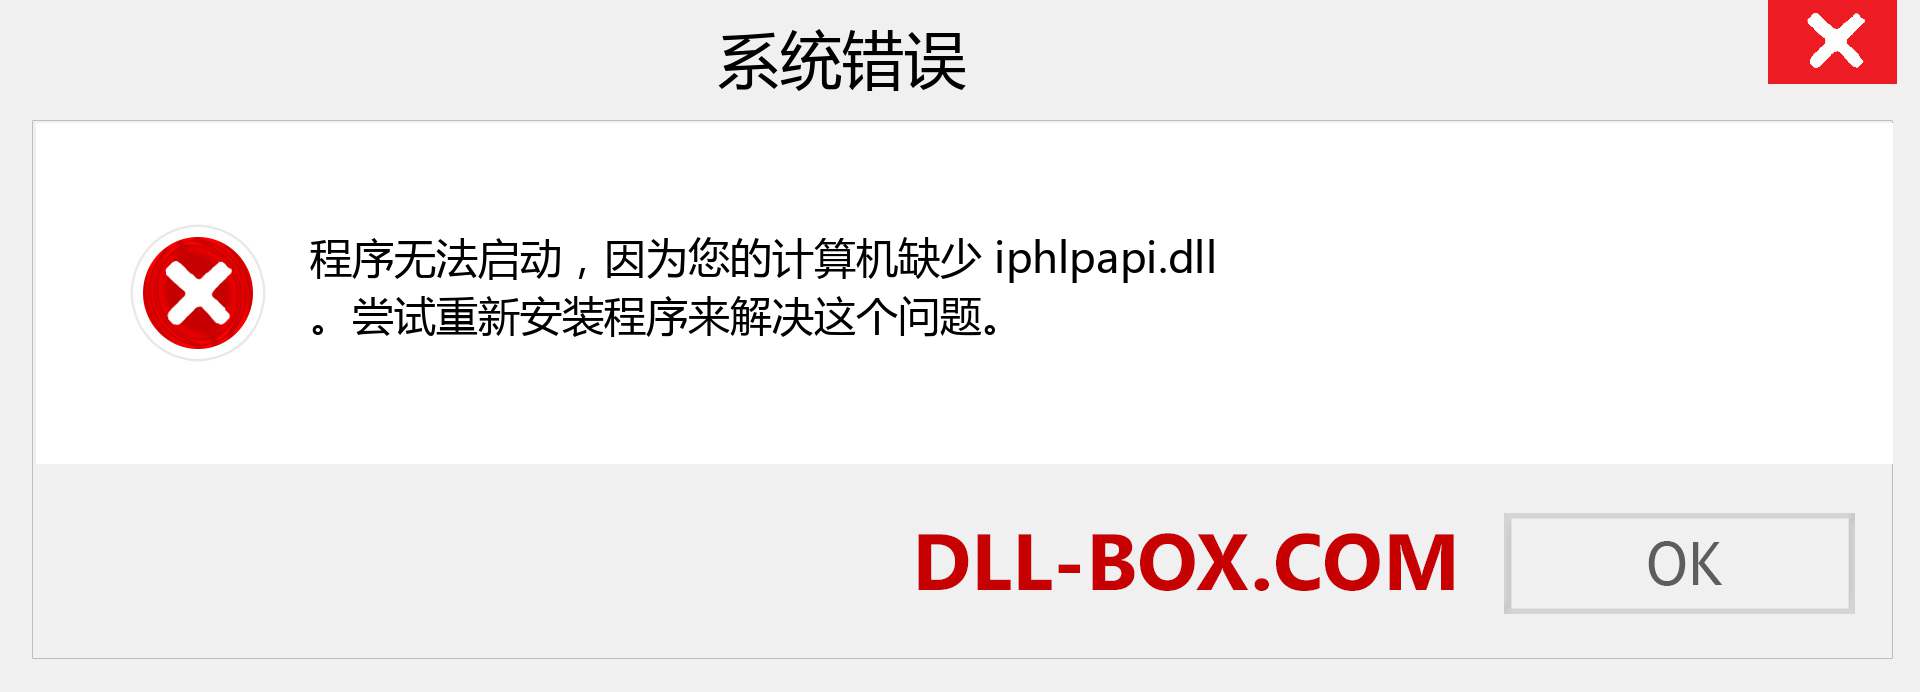 iphlpapi.dll 文件丢失？。 适用于 Windows 7、8、10 的下载 - 修复 Windows、照片、图像上的 iphlpapi dll 丢失错误